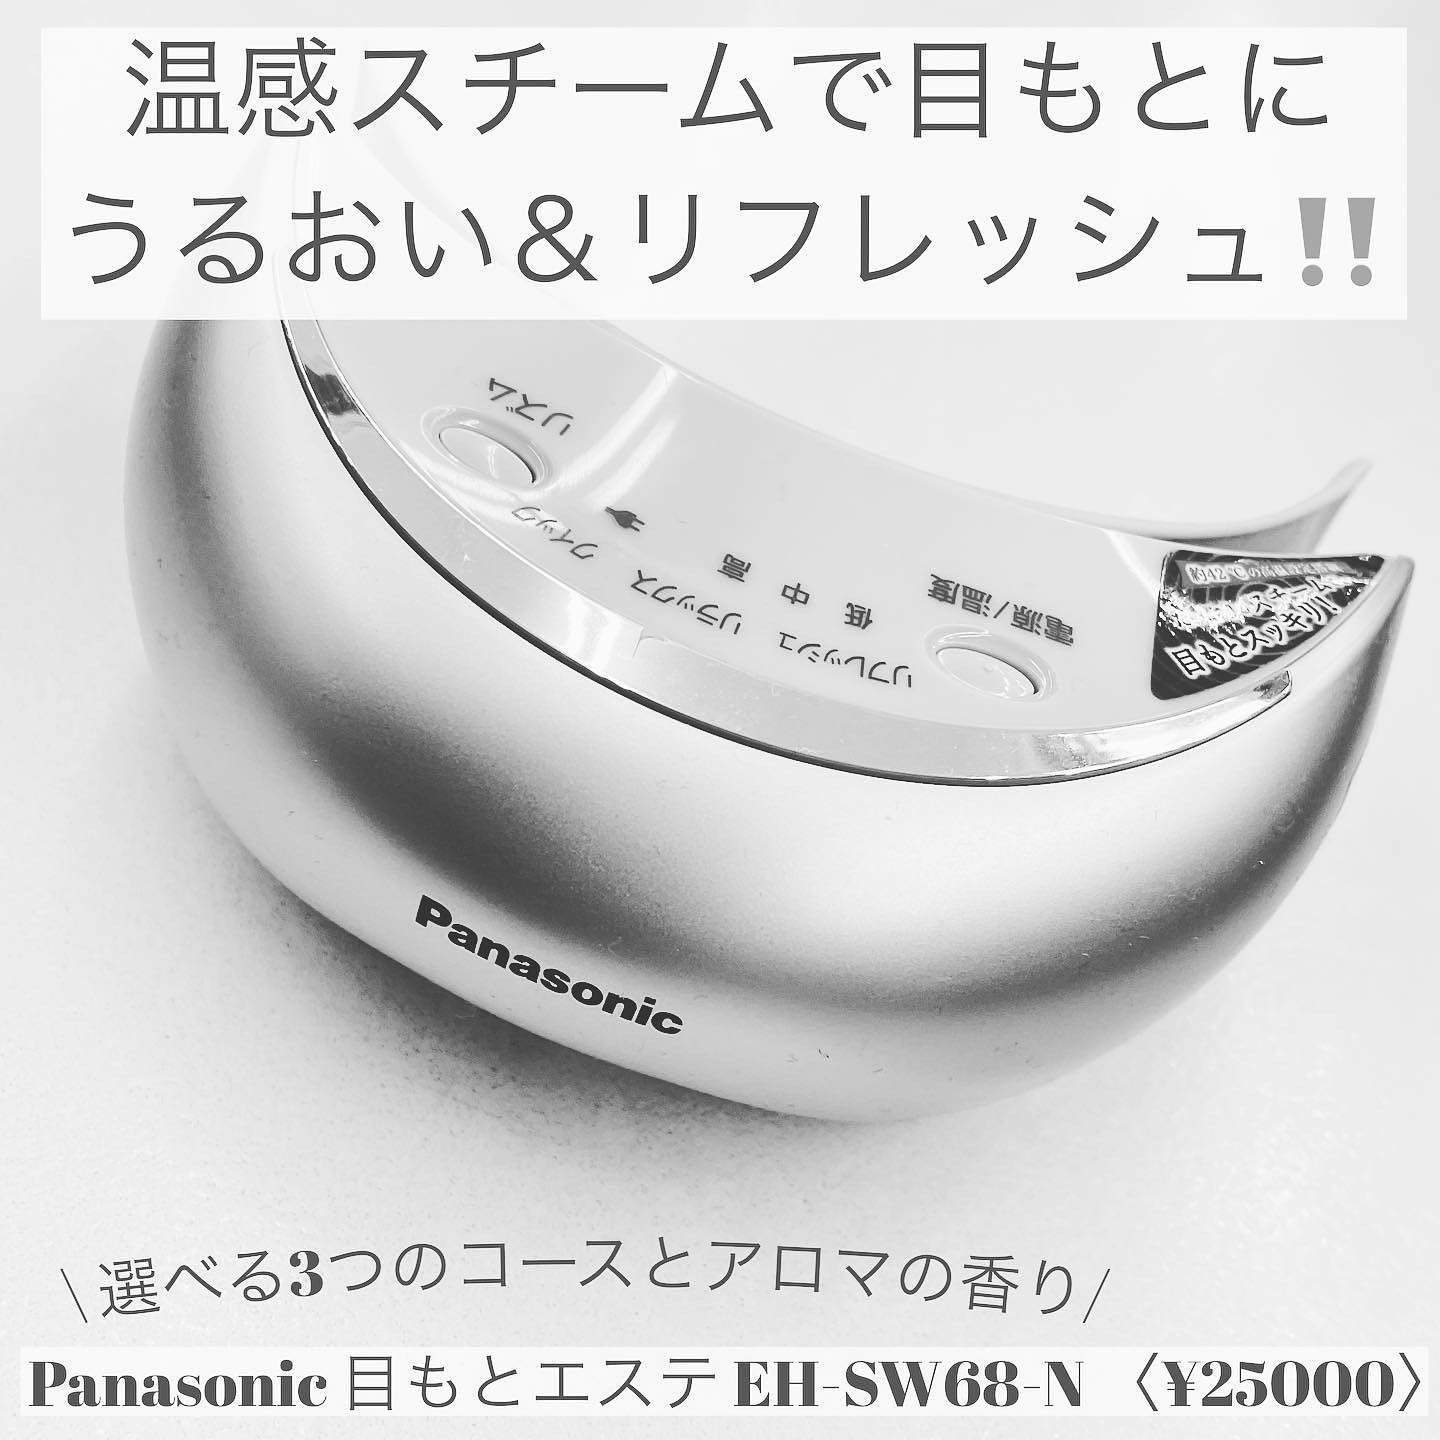 Panasonic / 目もとエステ EH-SW68の公式商品情報｜美容・化粧品情報は 